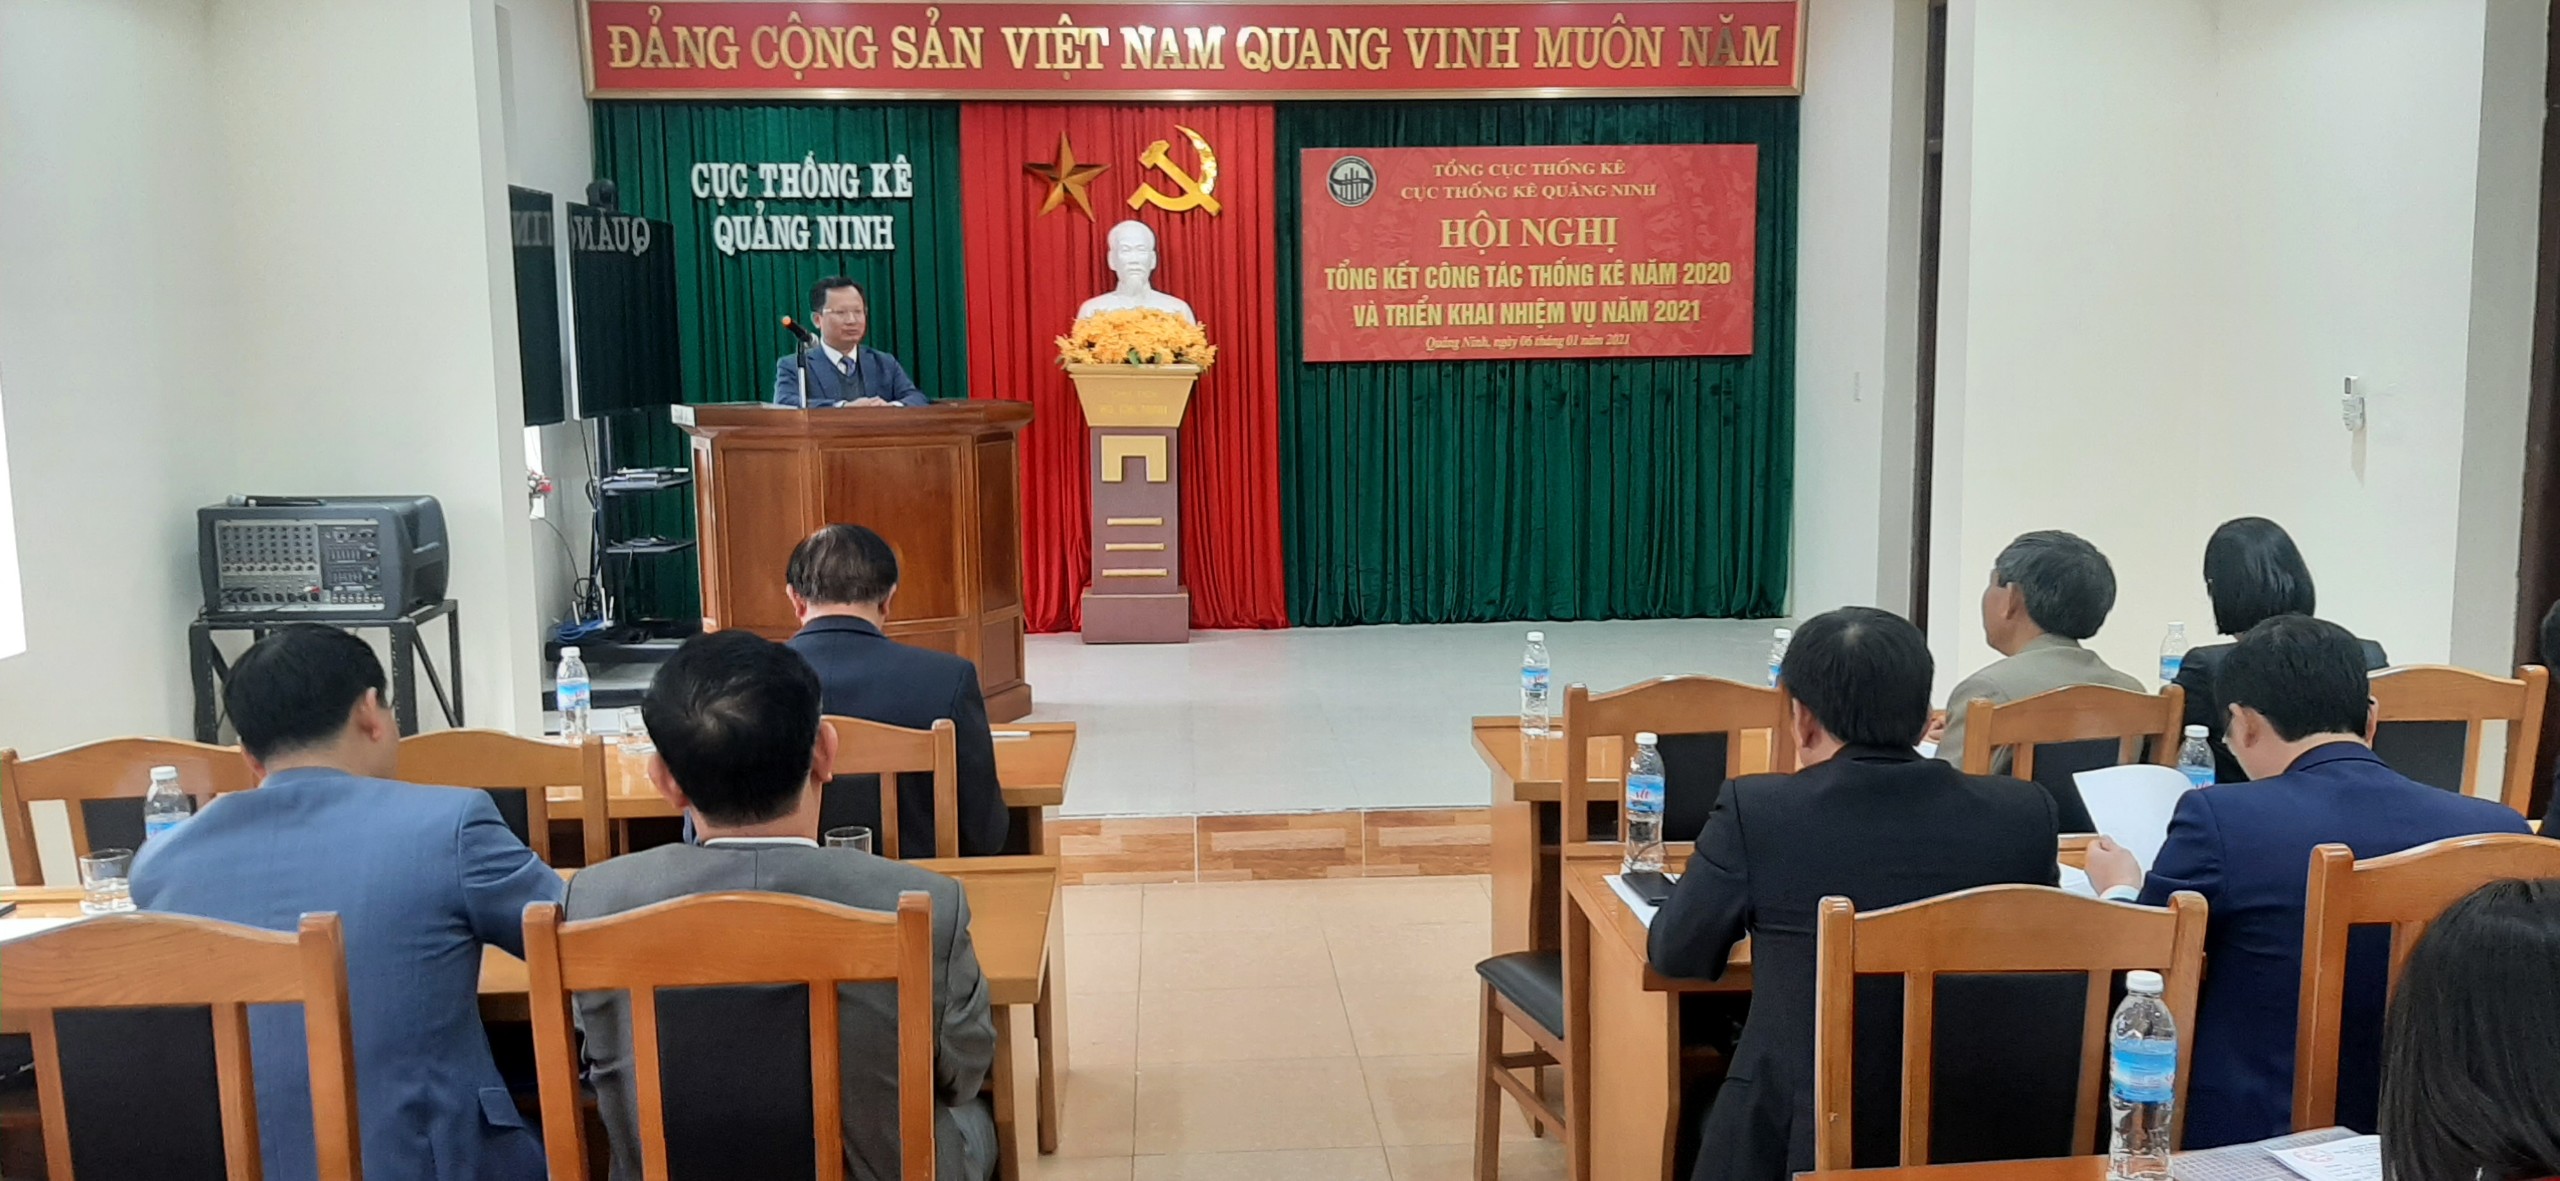 Đồng chí Cao Tường Huy, Phó Chủ tịch Thường trực UBND tỉnh phát biểu chỉ đạo hội nghị.